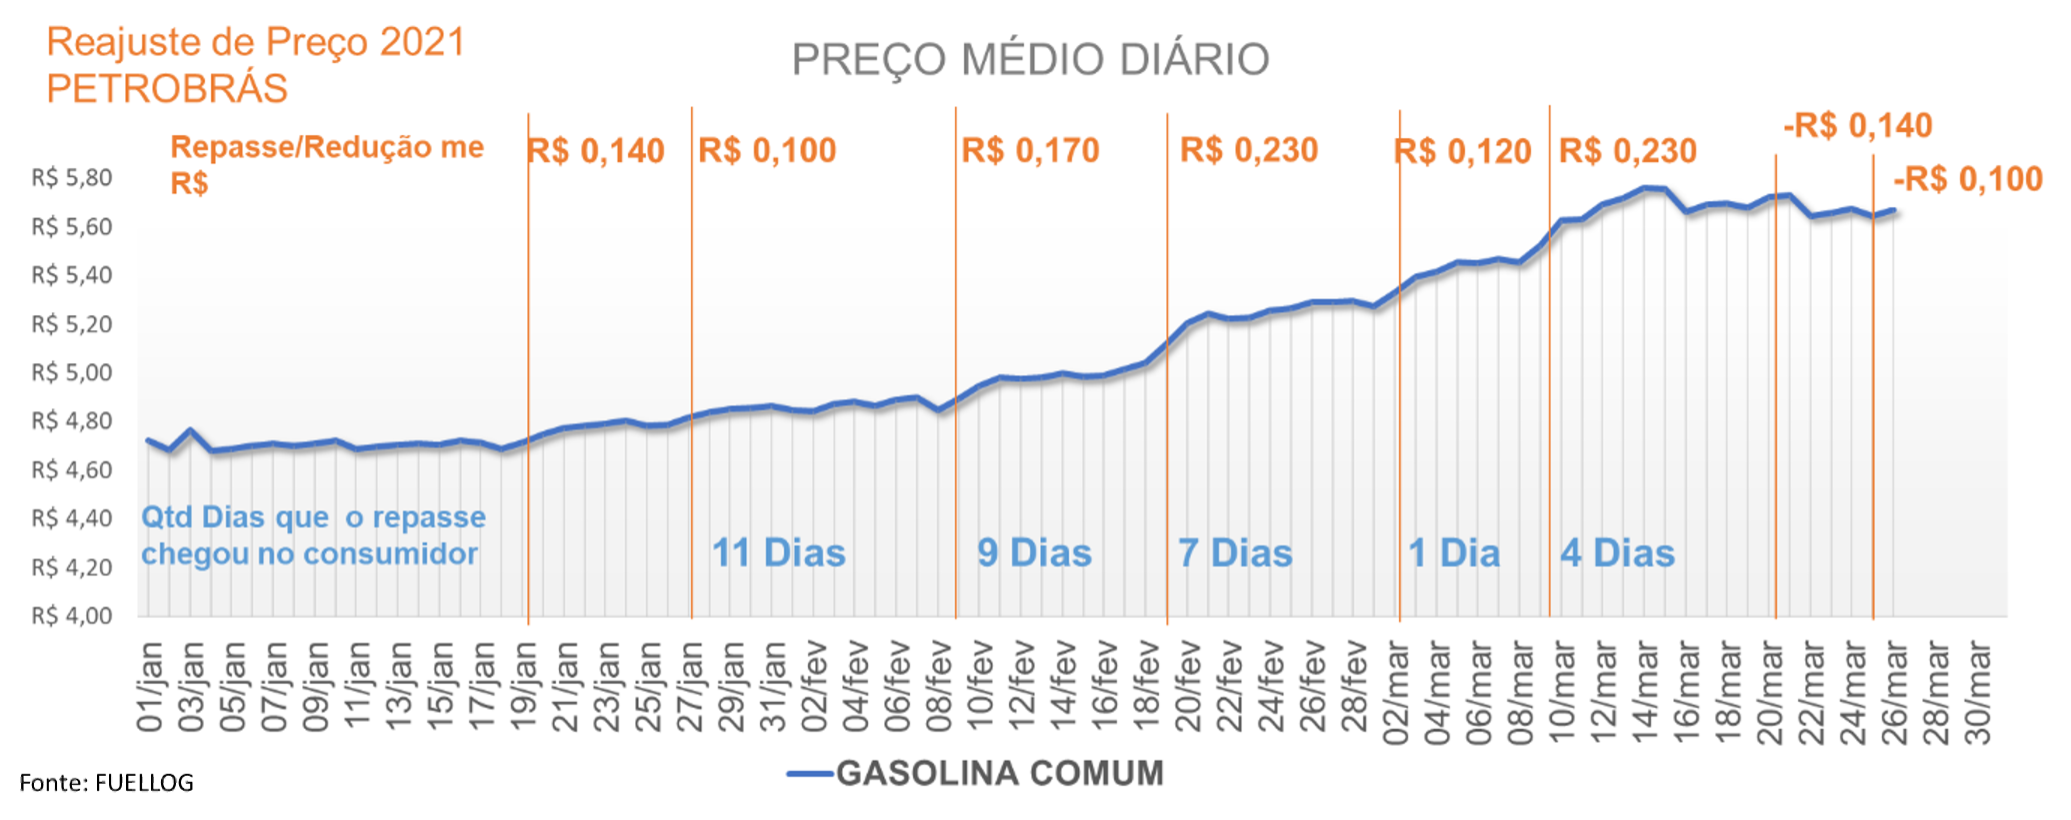 Tabela com o repasse do reajuste no preço médio da gasolina comum em 2021